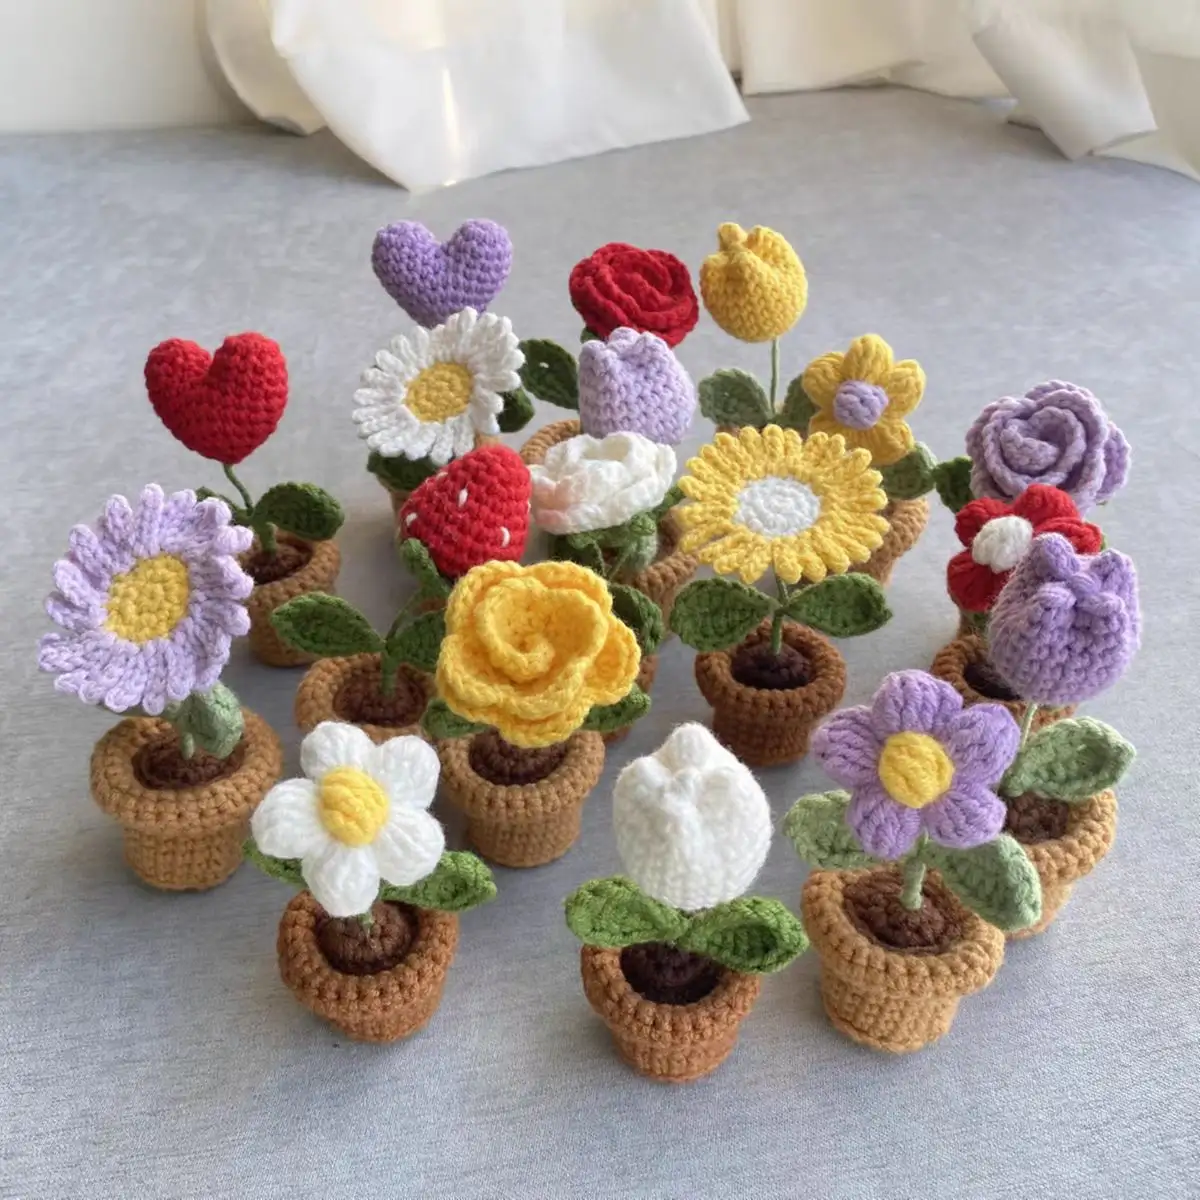 Mini Potted Knitting Flores Adorável Girassol Tulip Rose Pequena Daisy Crochet Homemade Office Decoração Decoração Do Carro